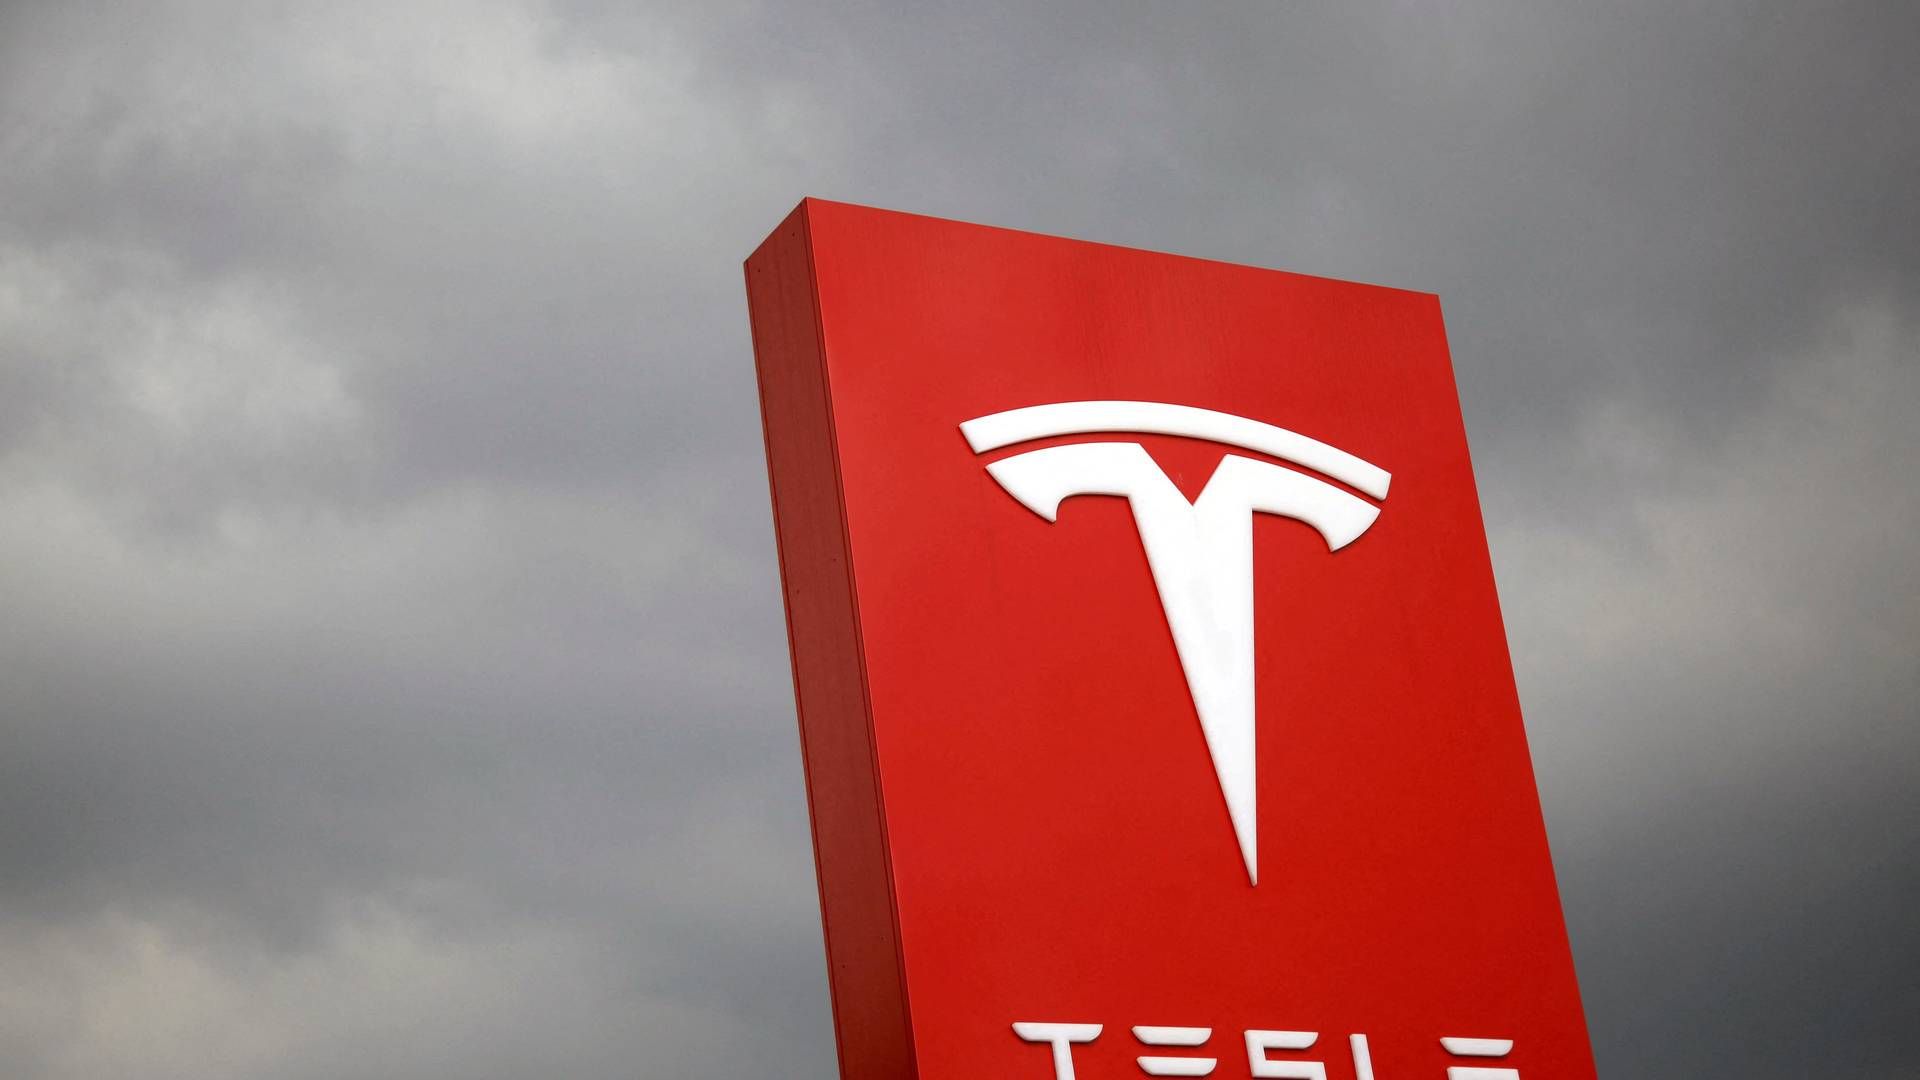 Tesla er ikke bekendt med, om ny fejl i bil har resulteret i ulykker. | Foto: Tyrone Siu/Reuters/Ritzau Scanpix